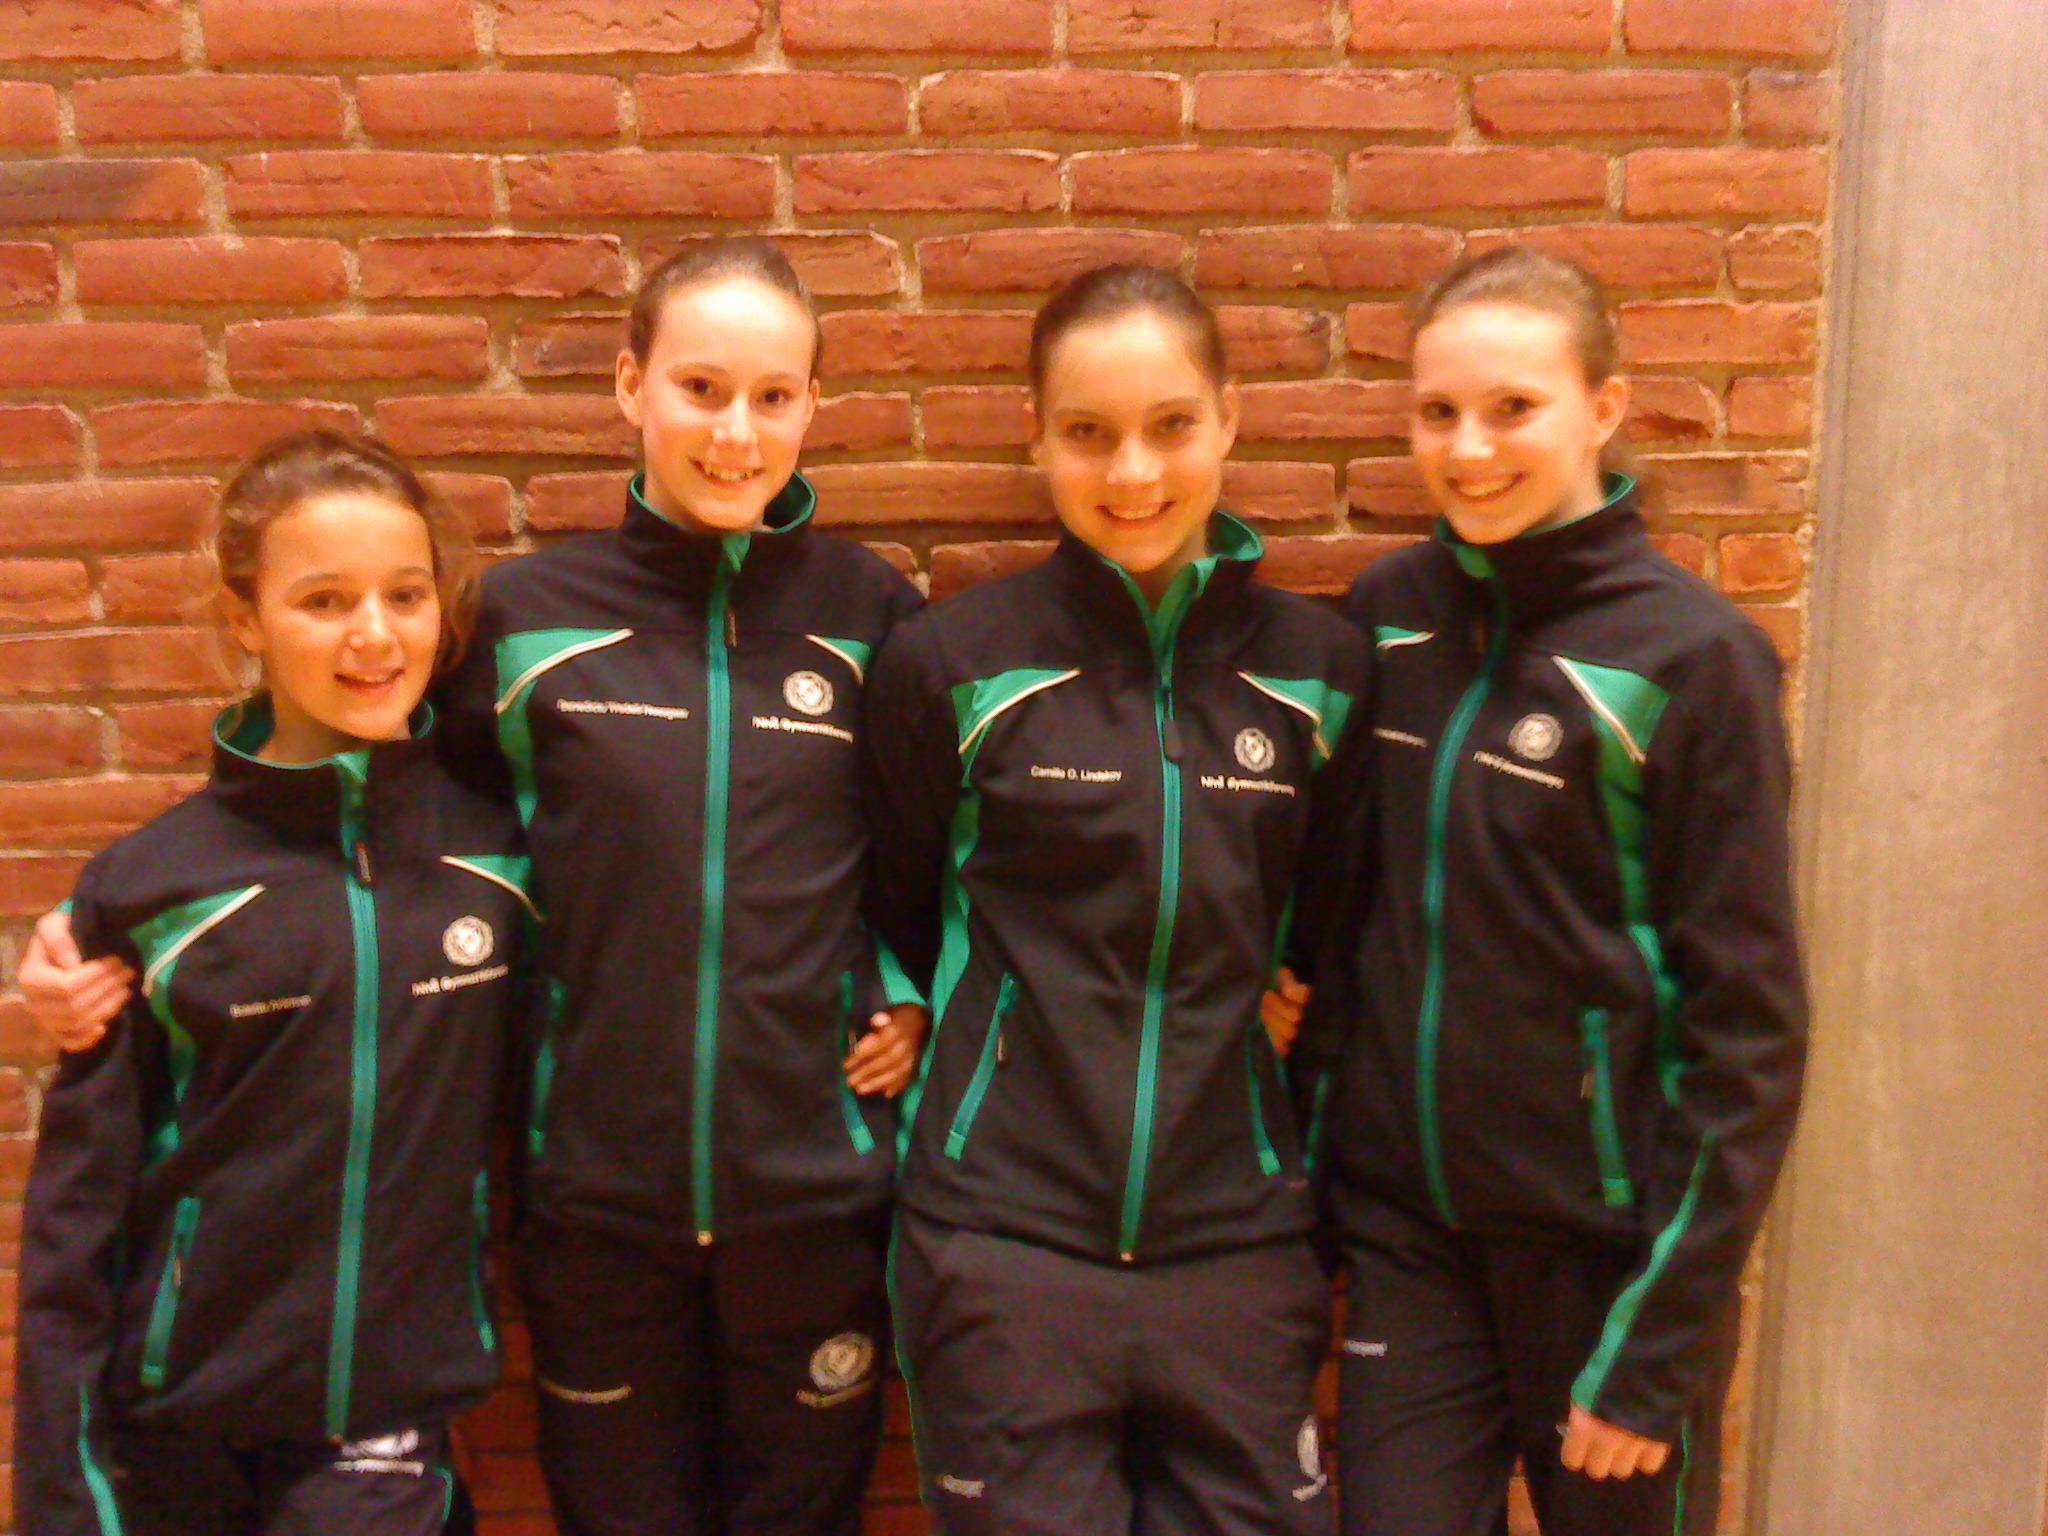 På billedet ses de 4 piger. Fra venstre er det Bolette Arildsen, Benedicte Wedell-Neergaard, Lina Prendergast, Elisabeth Wedell-Neergaard.